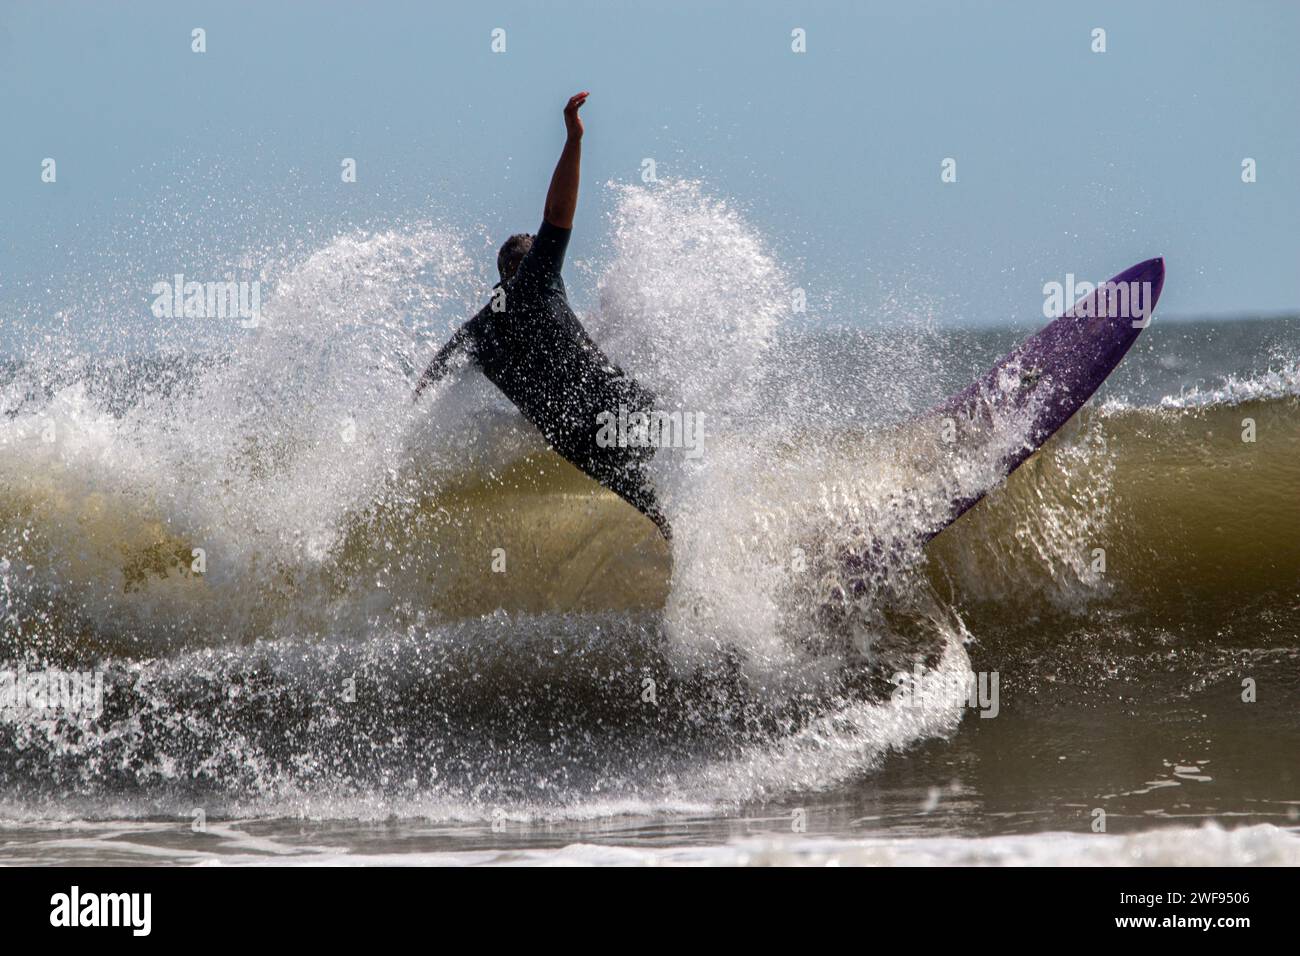 Un surfeur en combinaison tombant derrière sa planche de surf violette alors qu'il surfe à Gilgo Beach au large de long Island. Banque D'Images